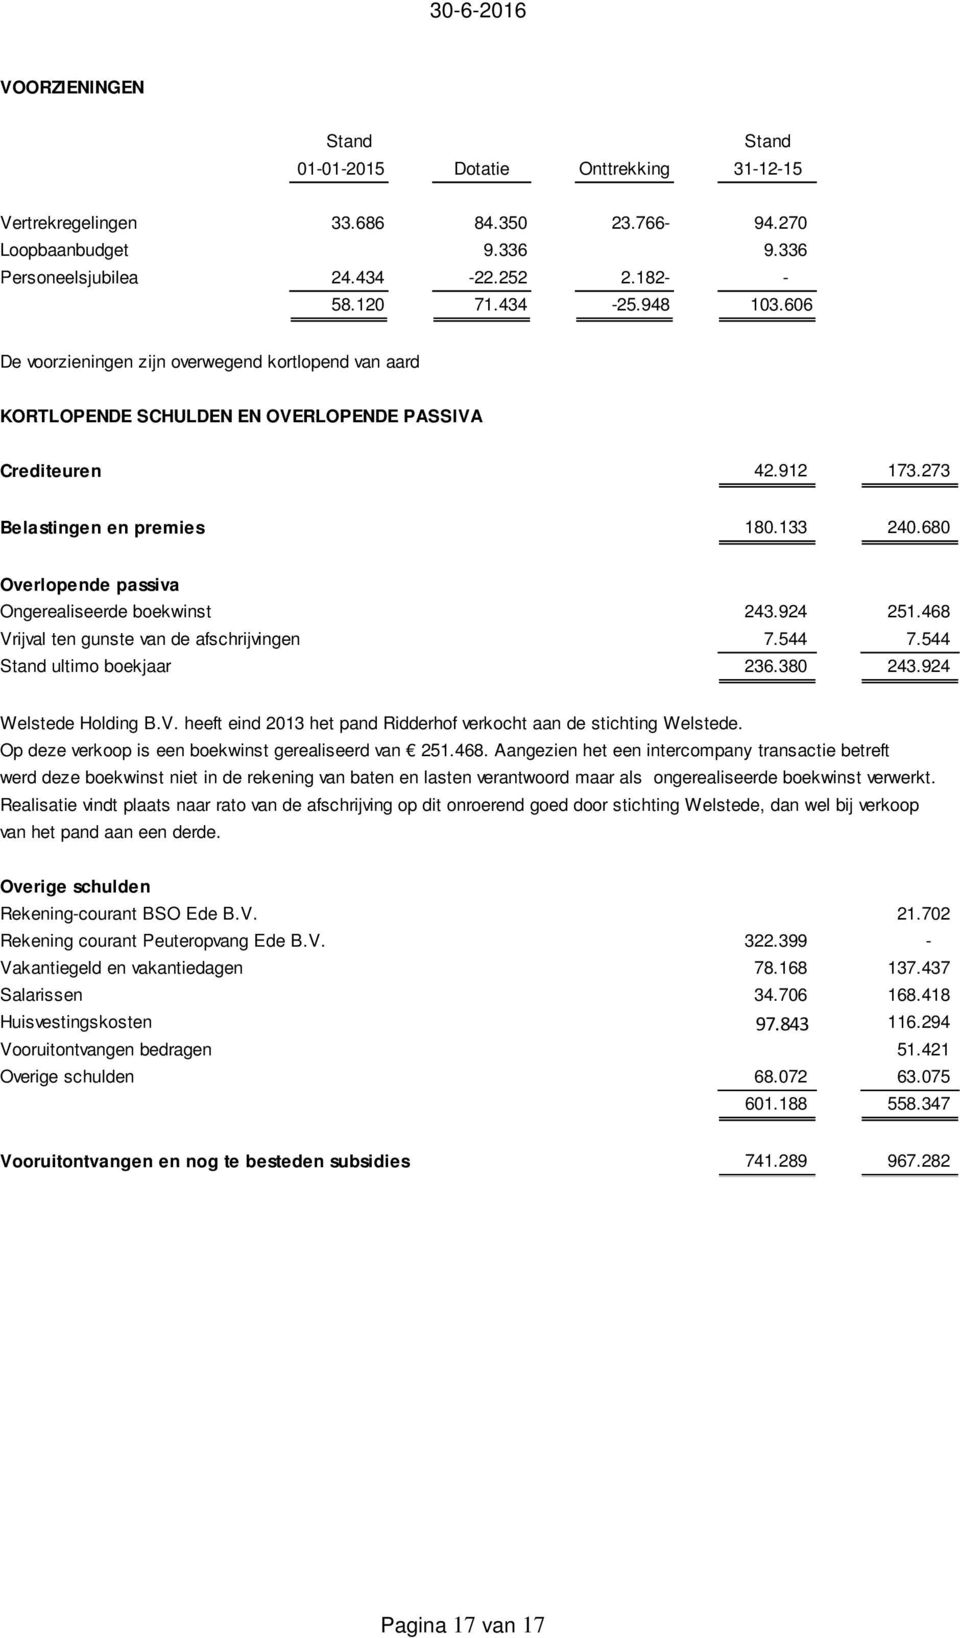 680 Overlopende passiva Ongerealiseerde boekwinst 243.924 251.468 Vrijval ten gunste van de afschrijvingen 7.544 7.544 Stand ultimo boekjaar 236.380 243.924 Welstede Holding B.V. heeft eind 2013 het pand Ridderhof verkocht aan de stichting Welstede.